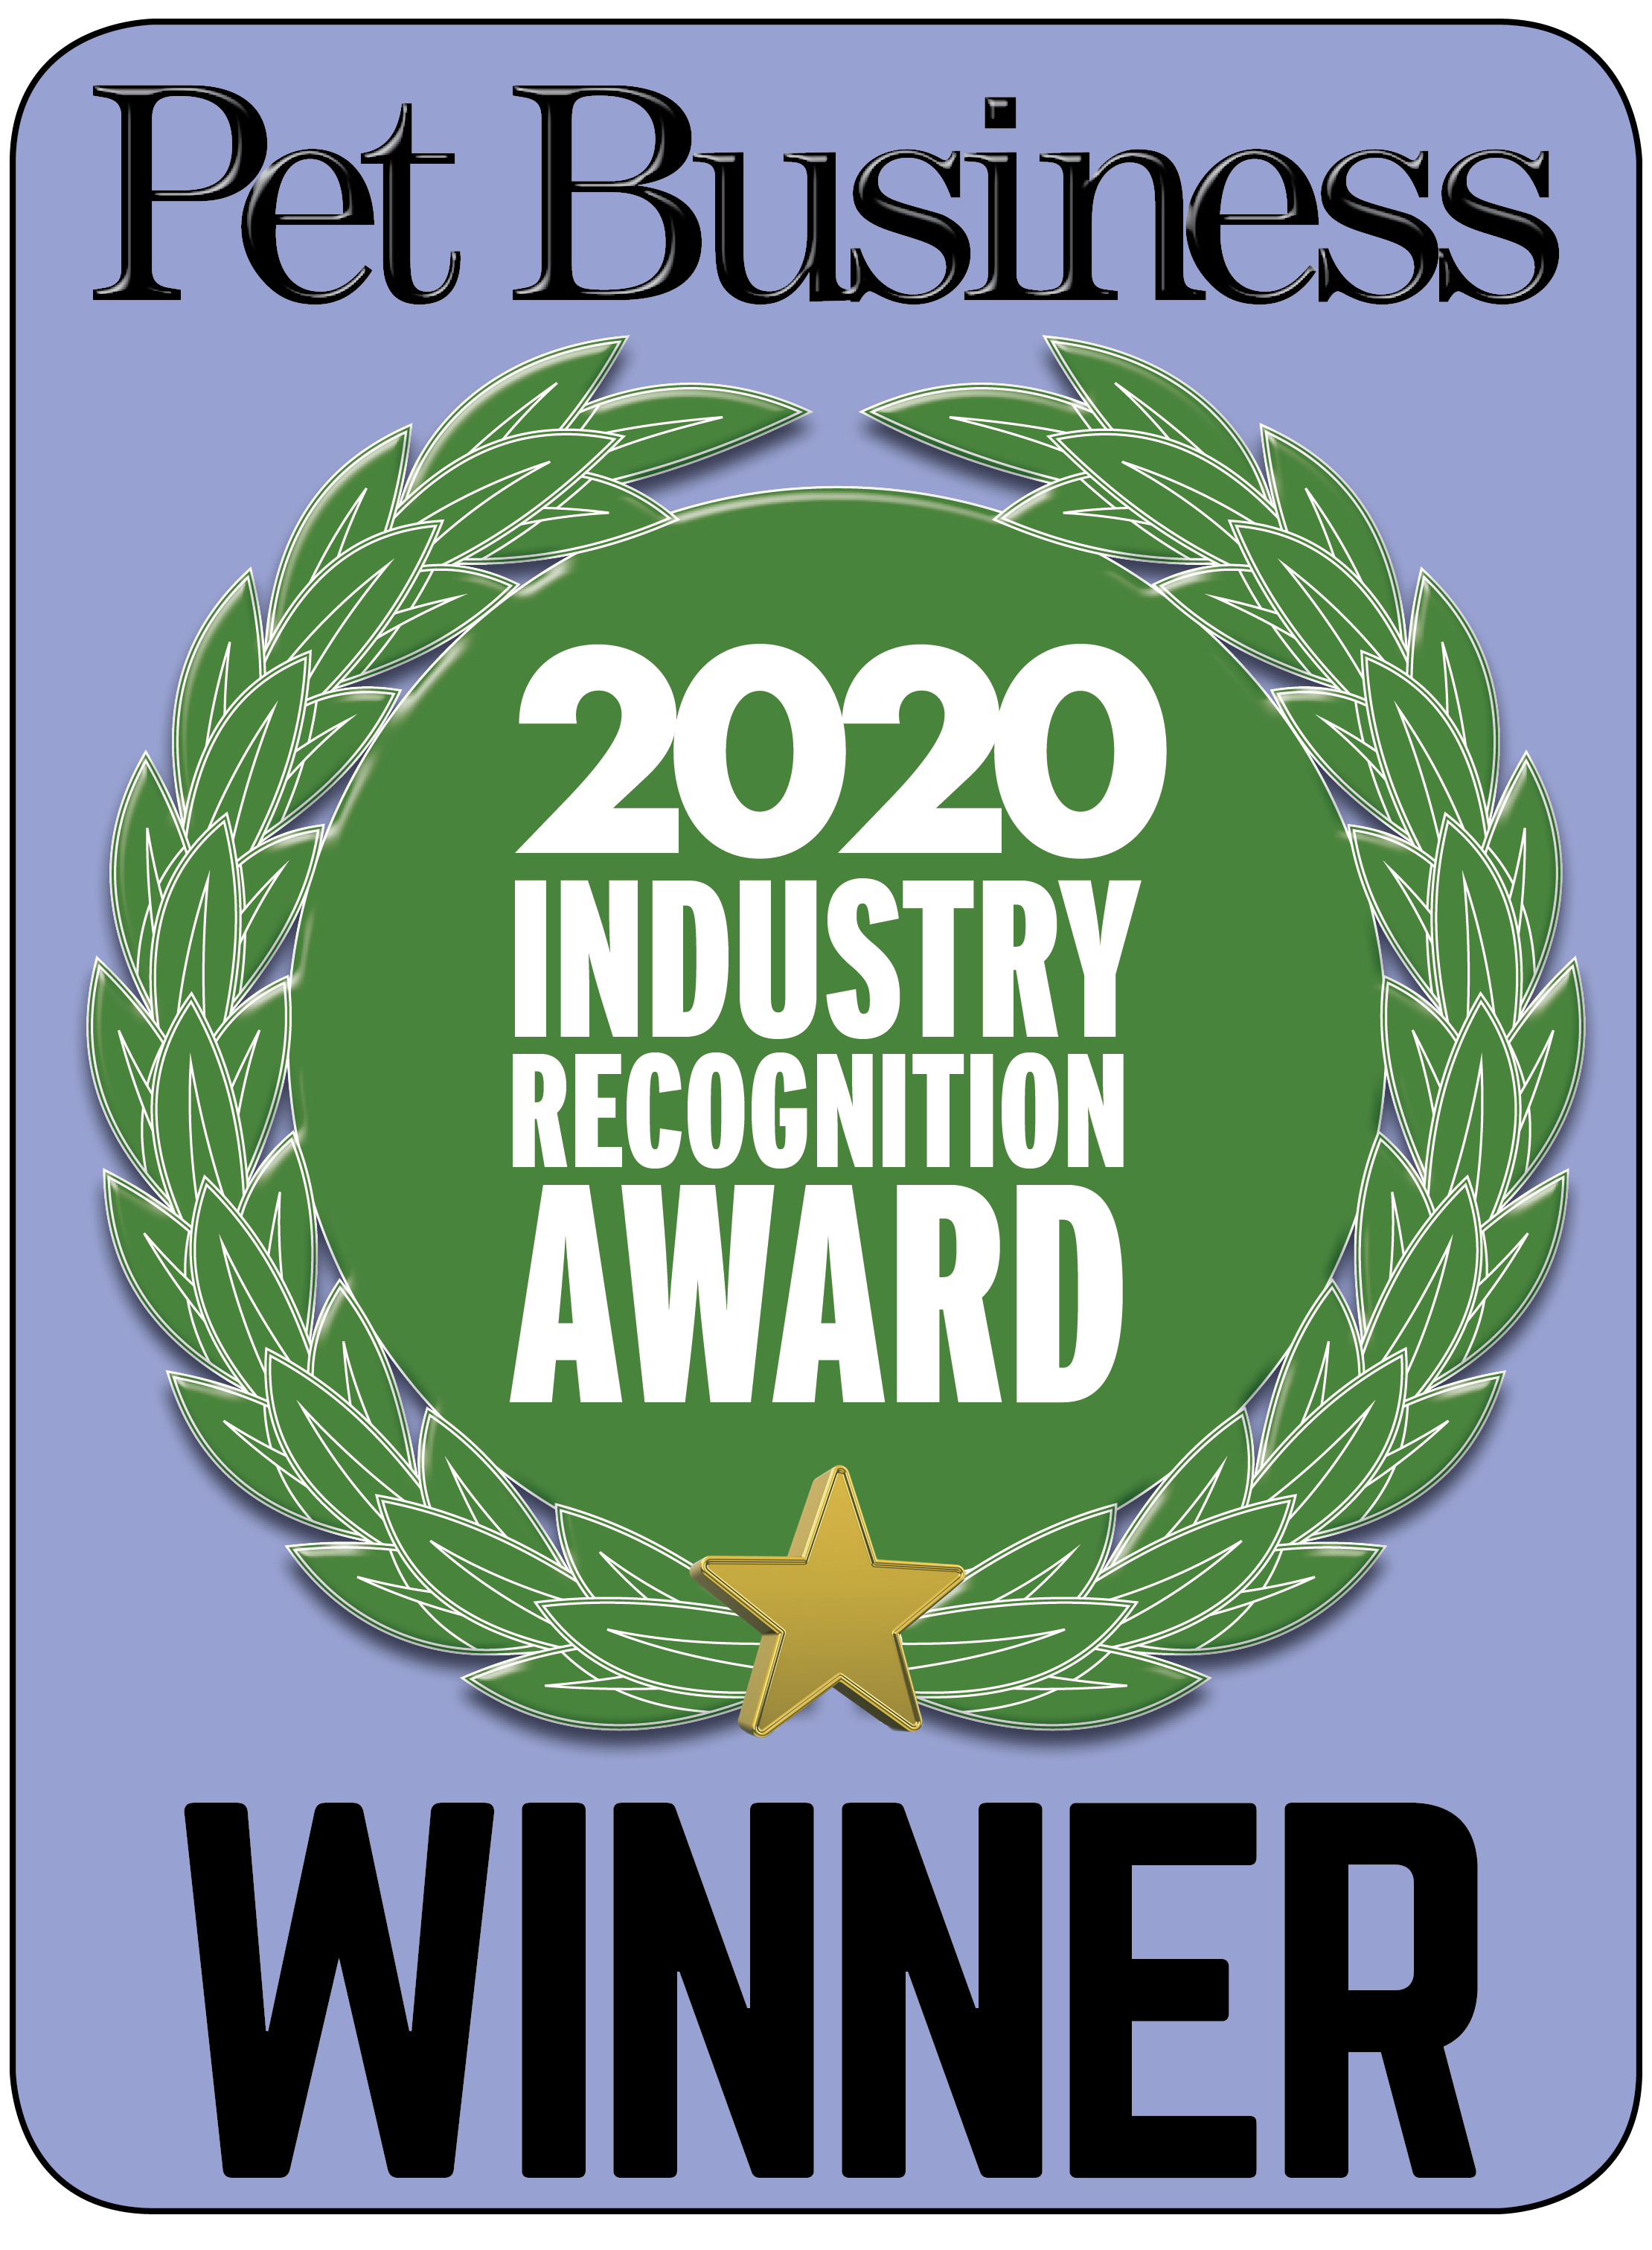 IRA Award Pet Business Magazine 2020